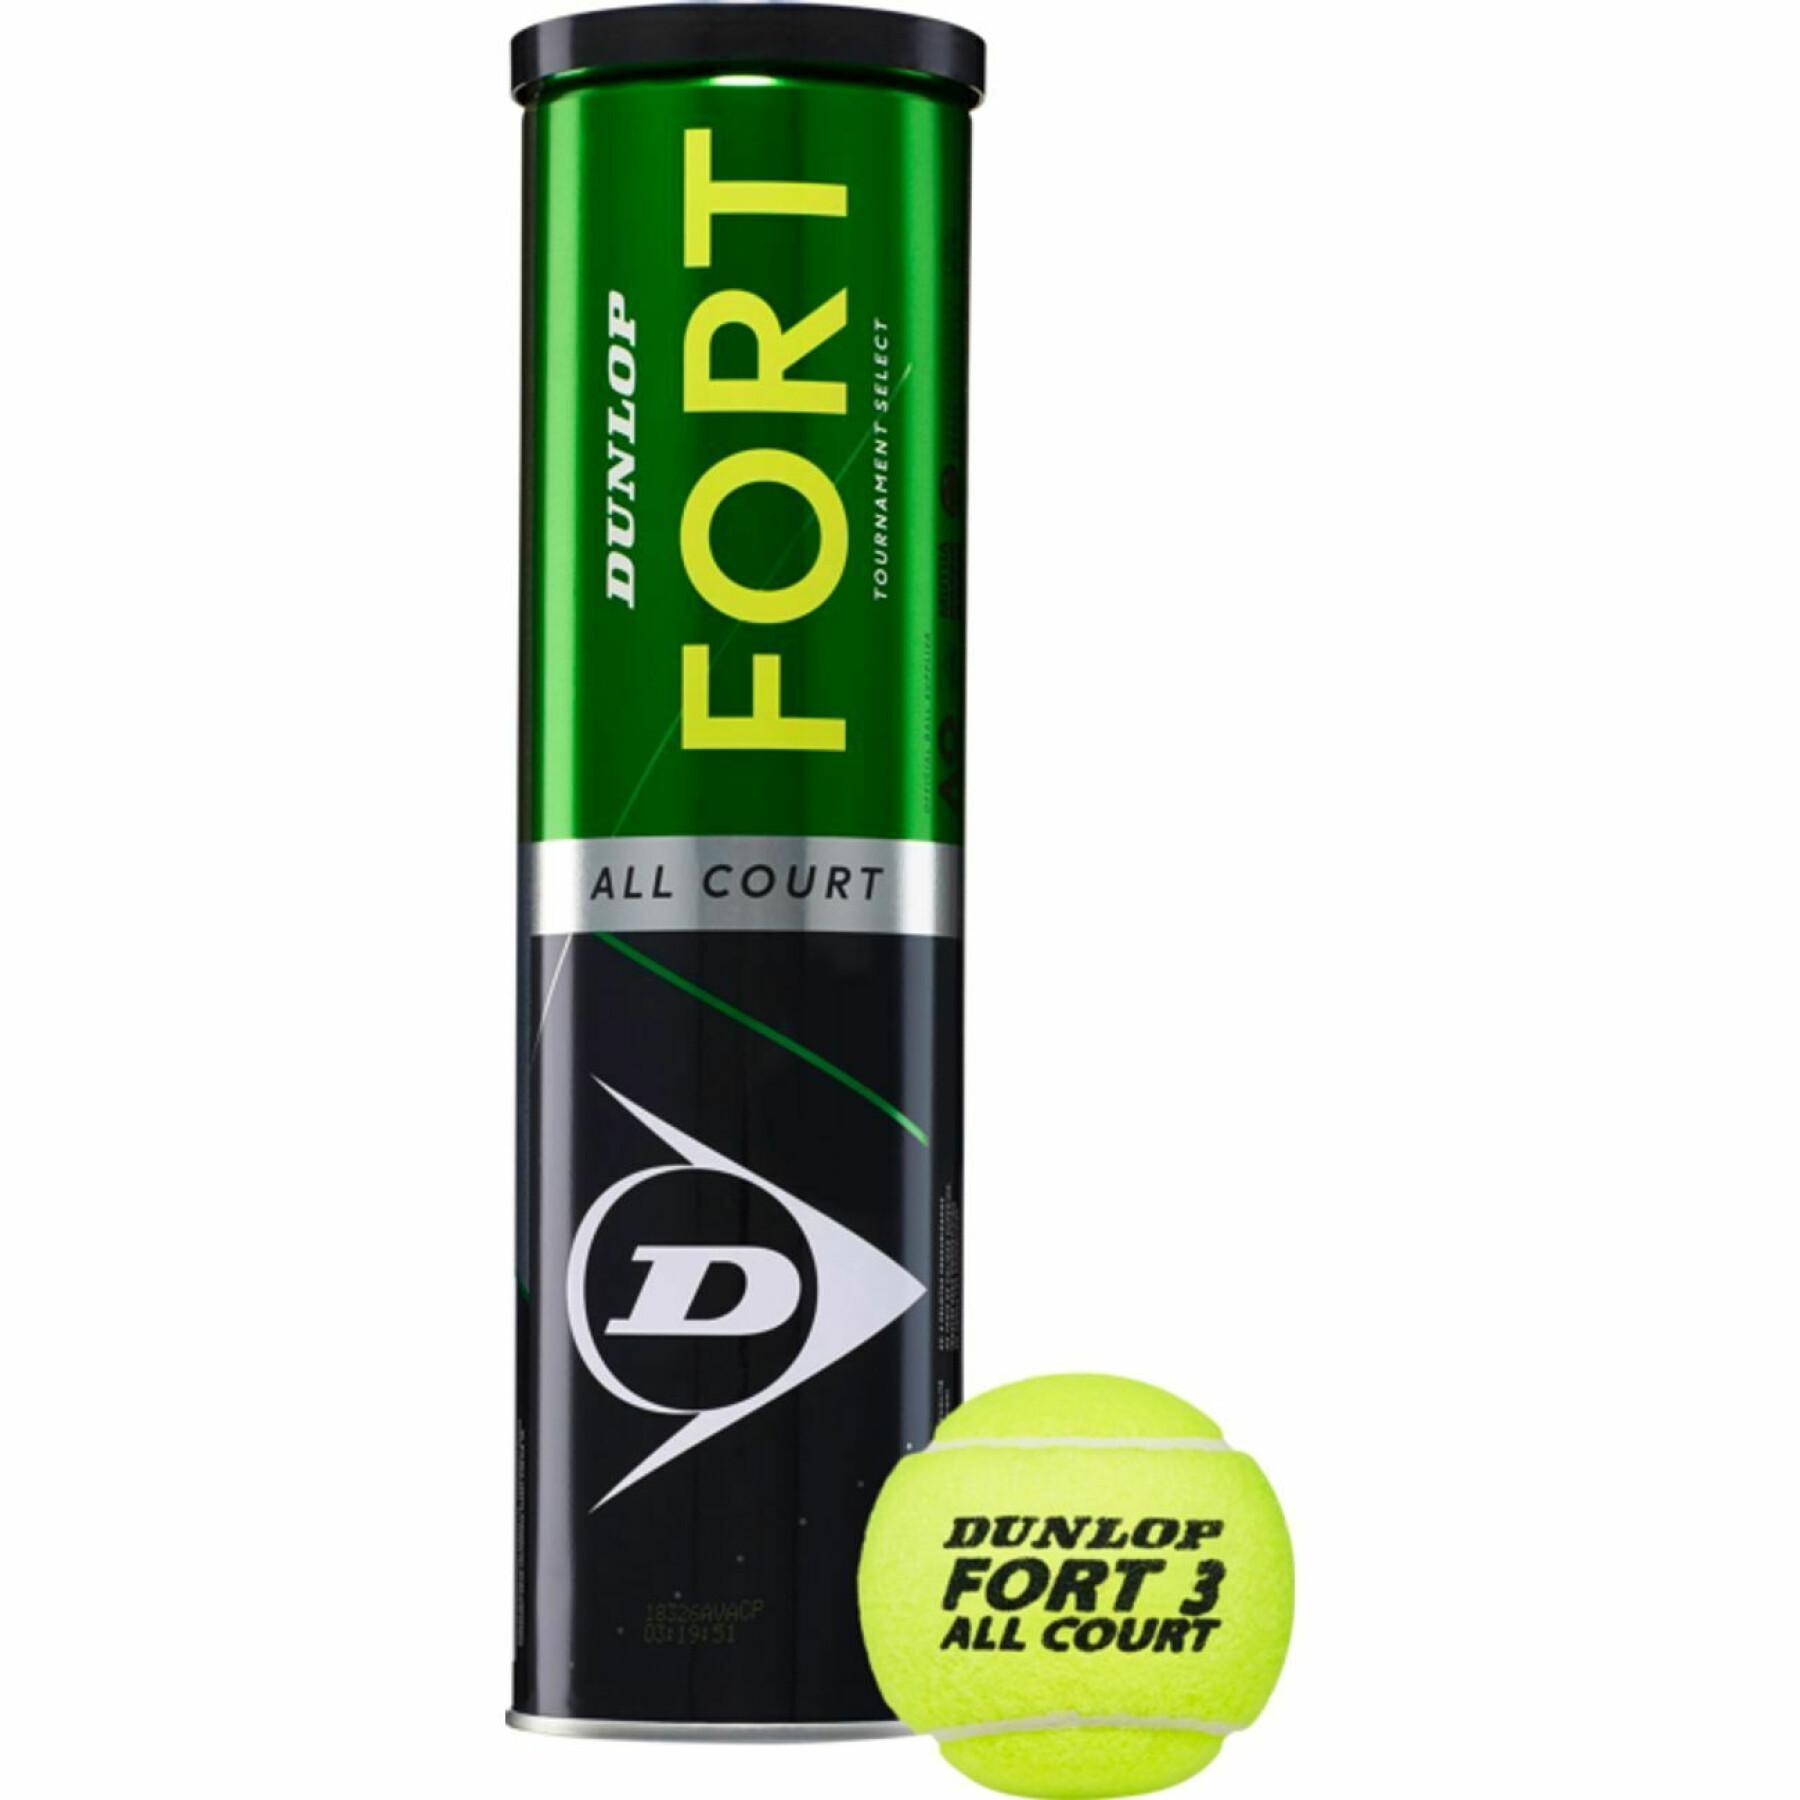 Tennis balls Dunlop Fort all court ts 4tin